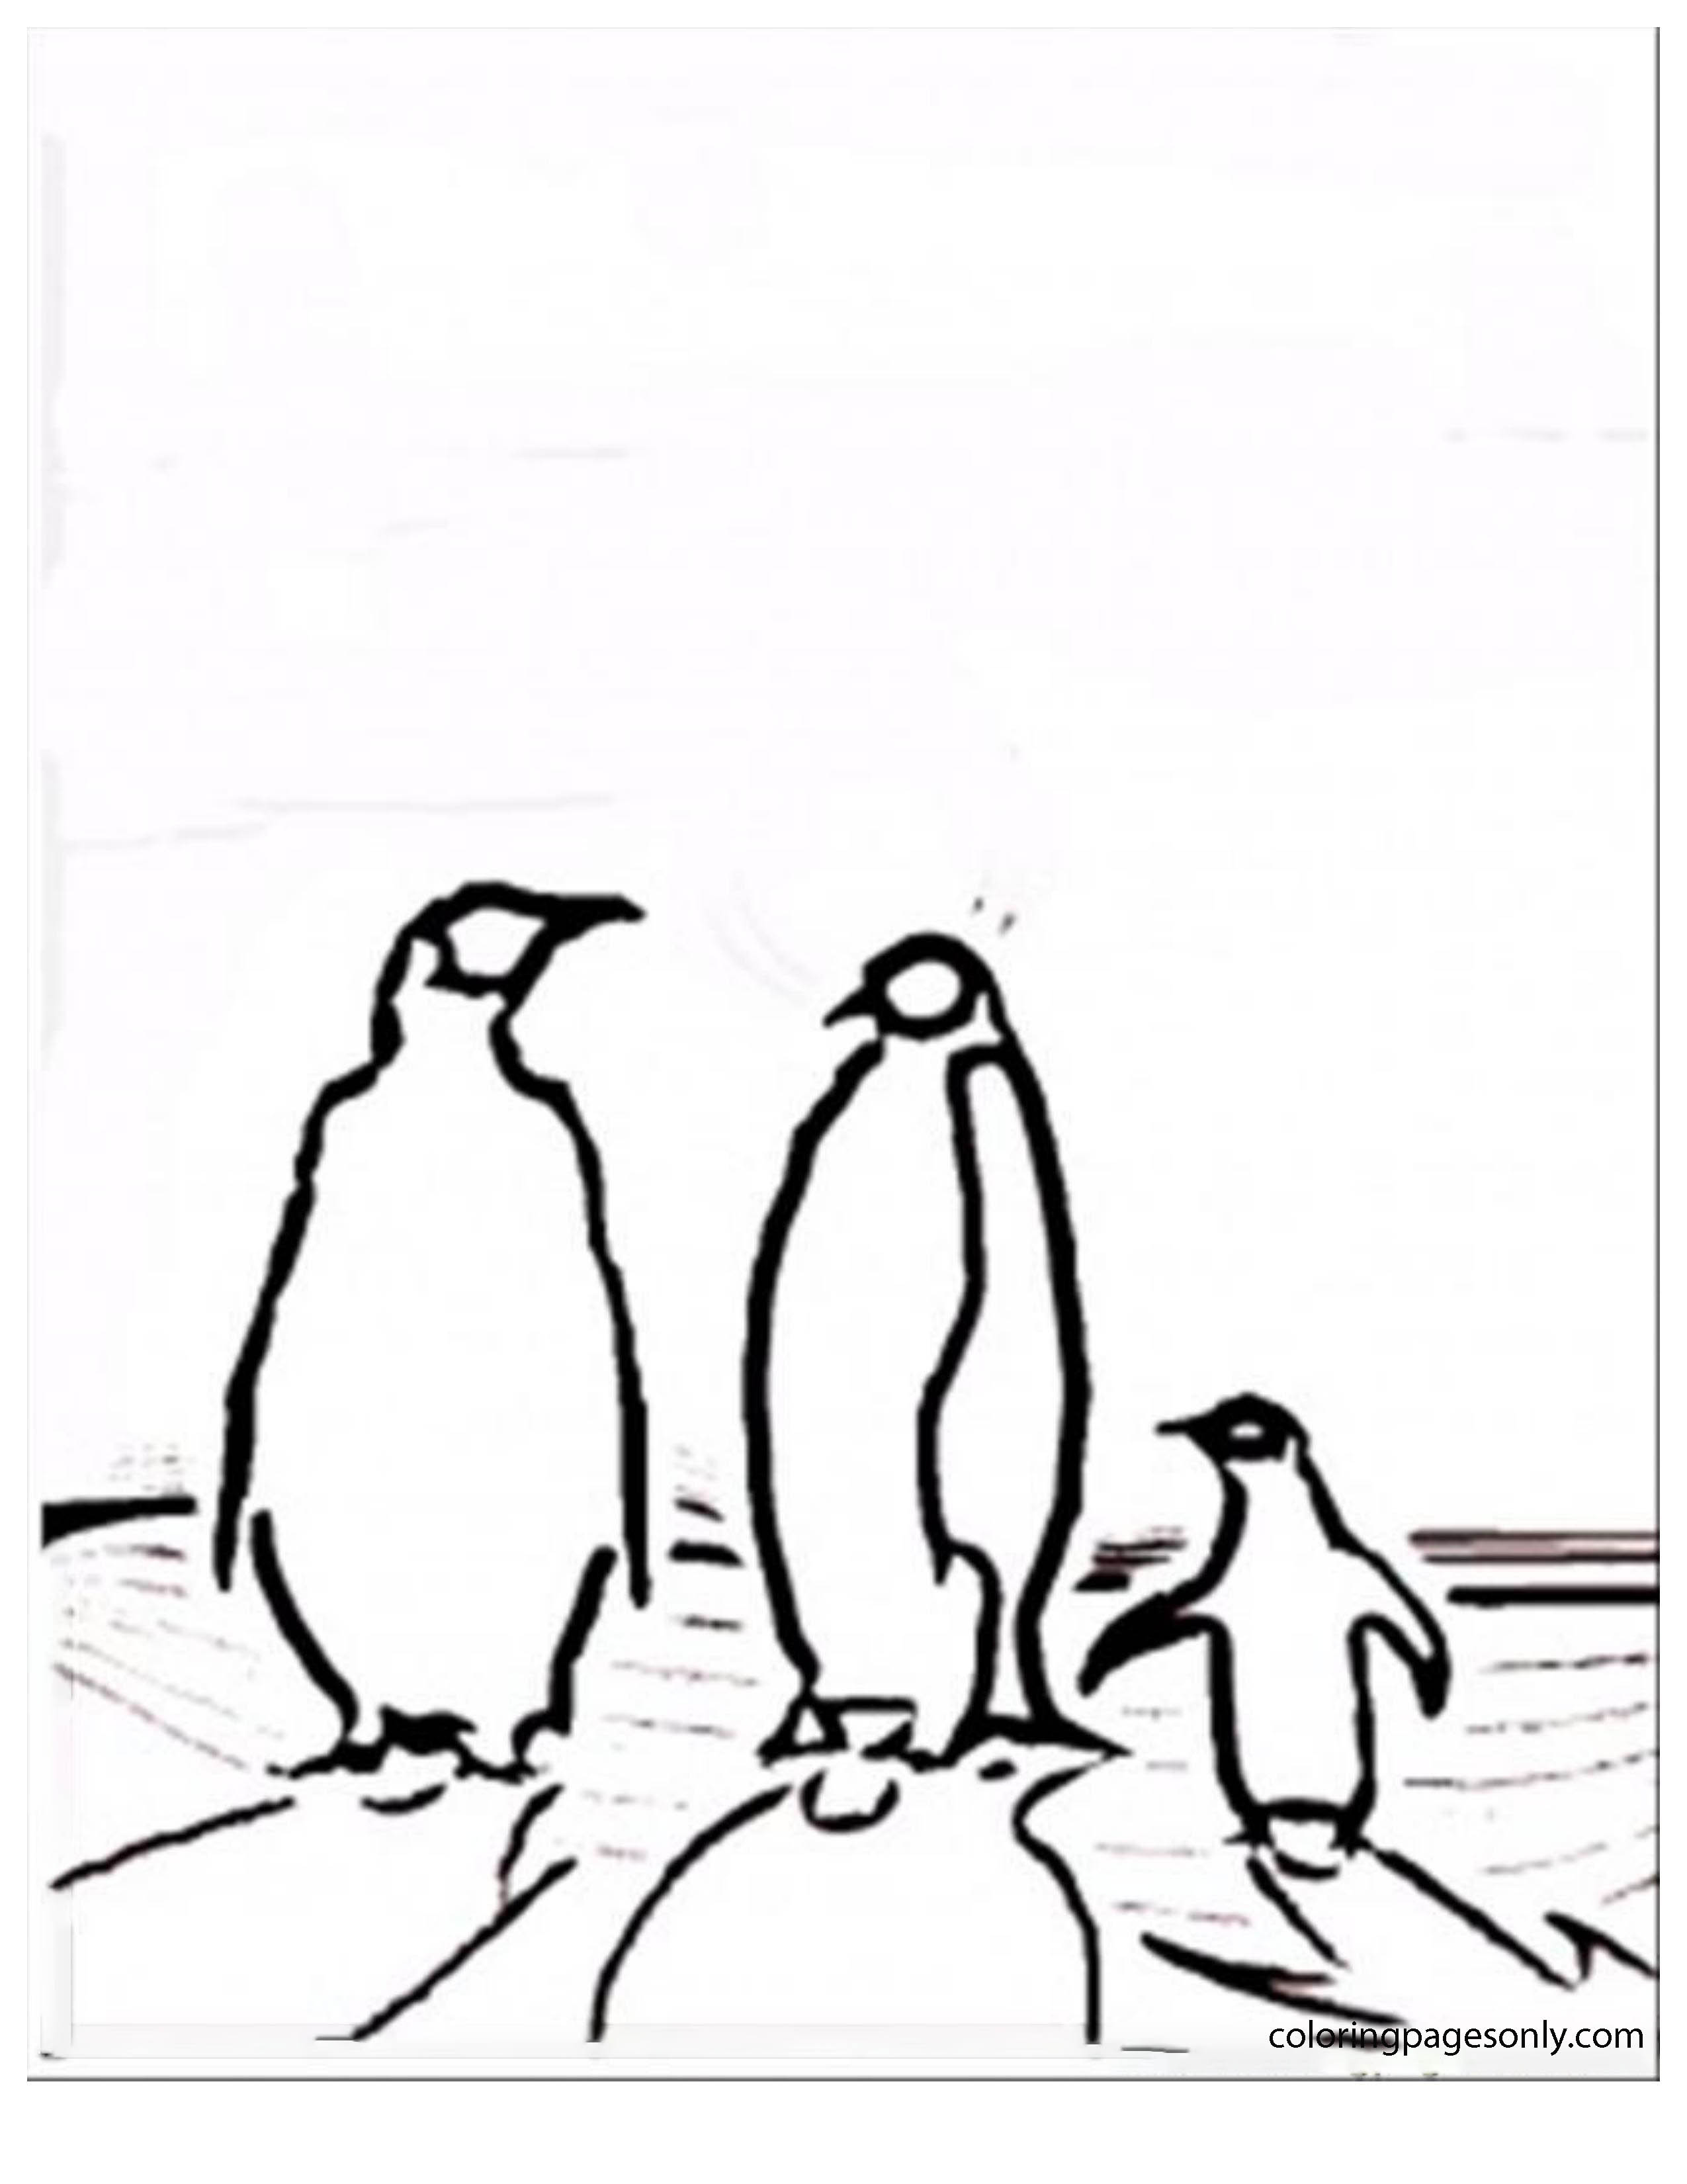 Семья пингвинов с Северного и Южного полюсов